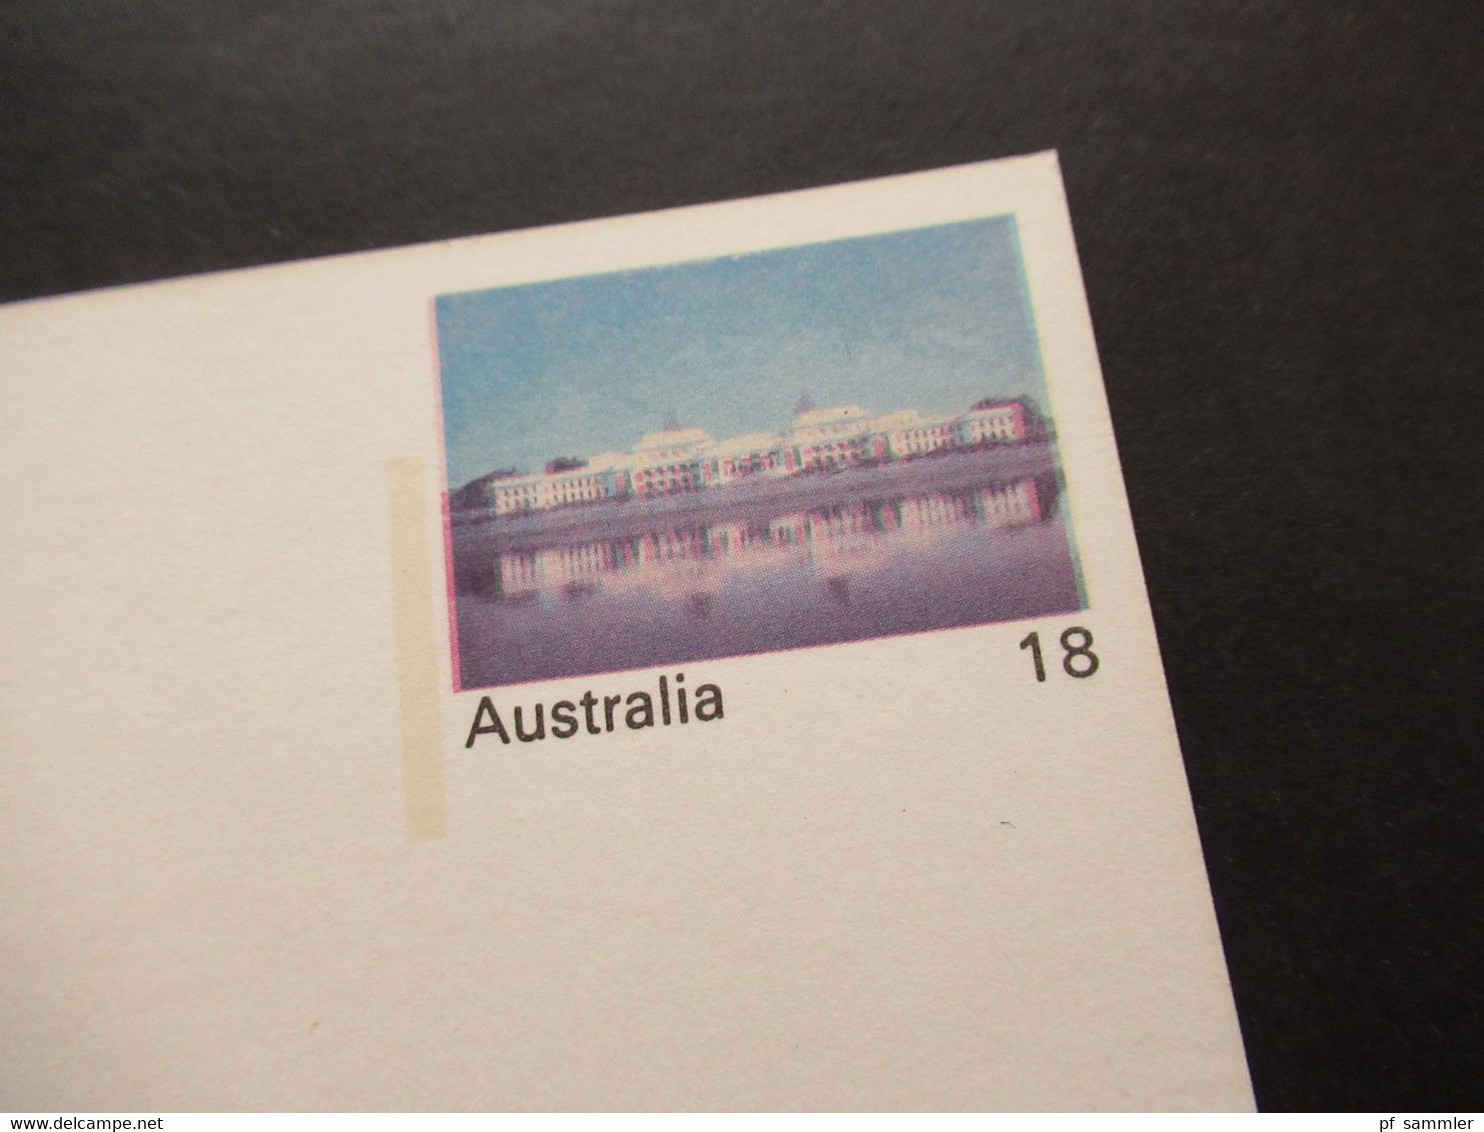 Australien 1976 Ganzsache Mit Druckfehler / Verschobener Druck! Parliament House Vievew Across Lake Burley Griffin - Storia Postale